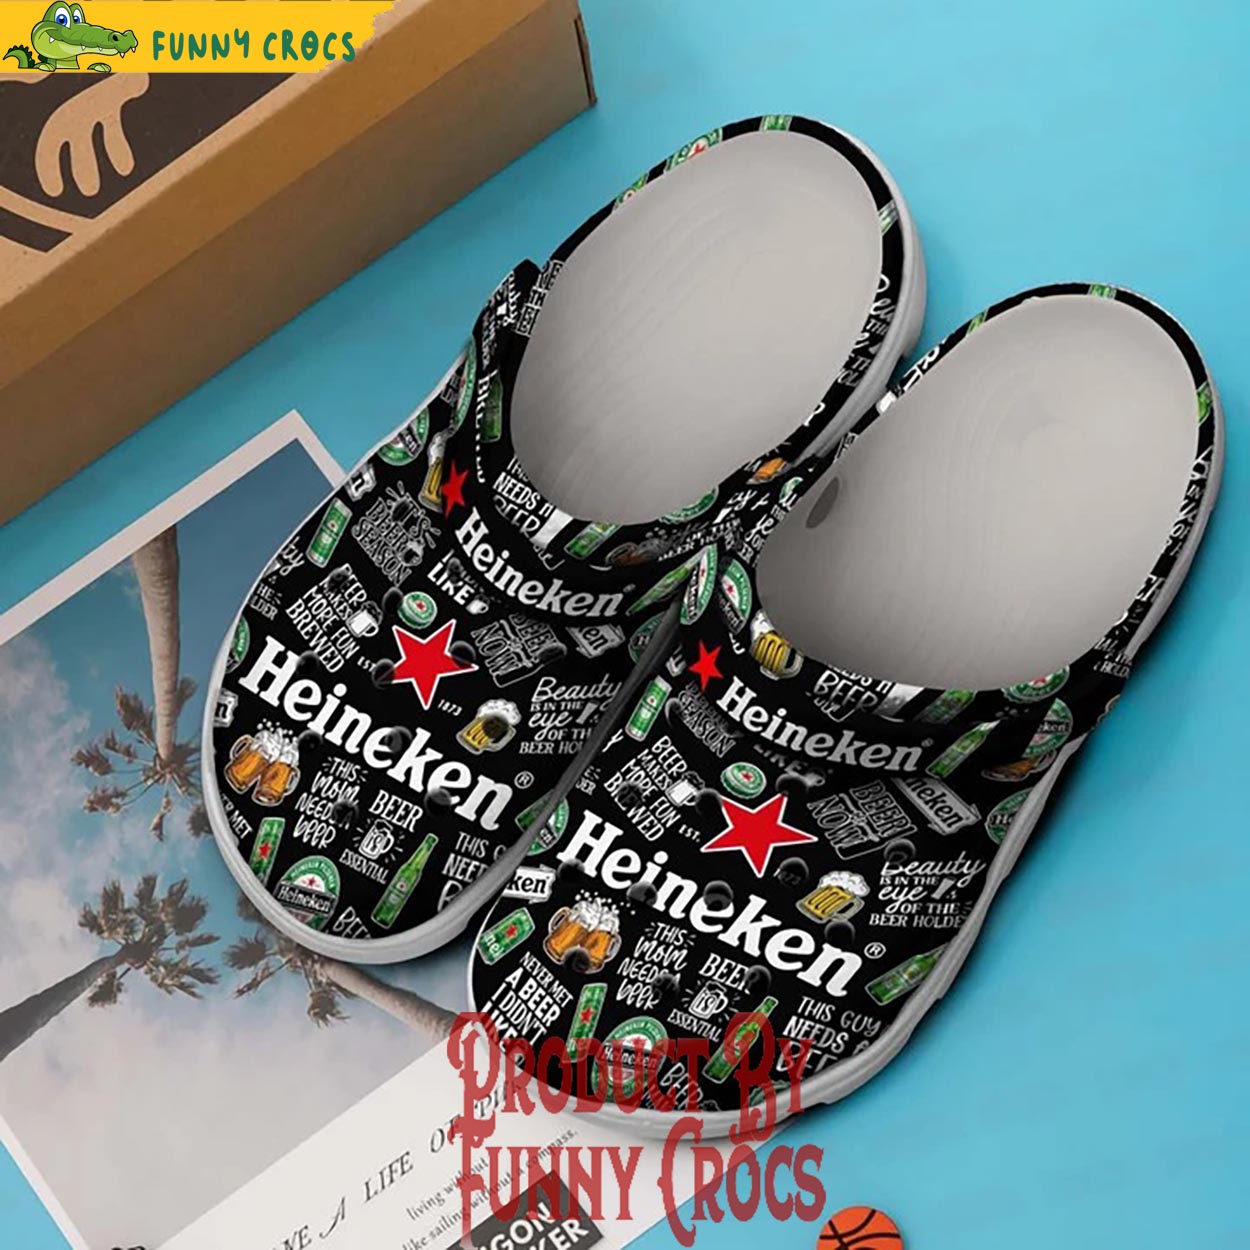 Heineken Crocs Shoes